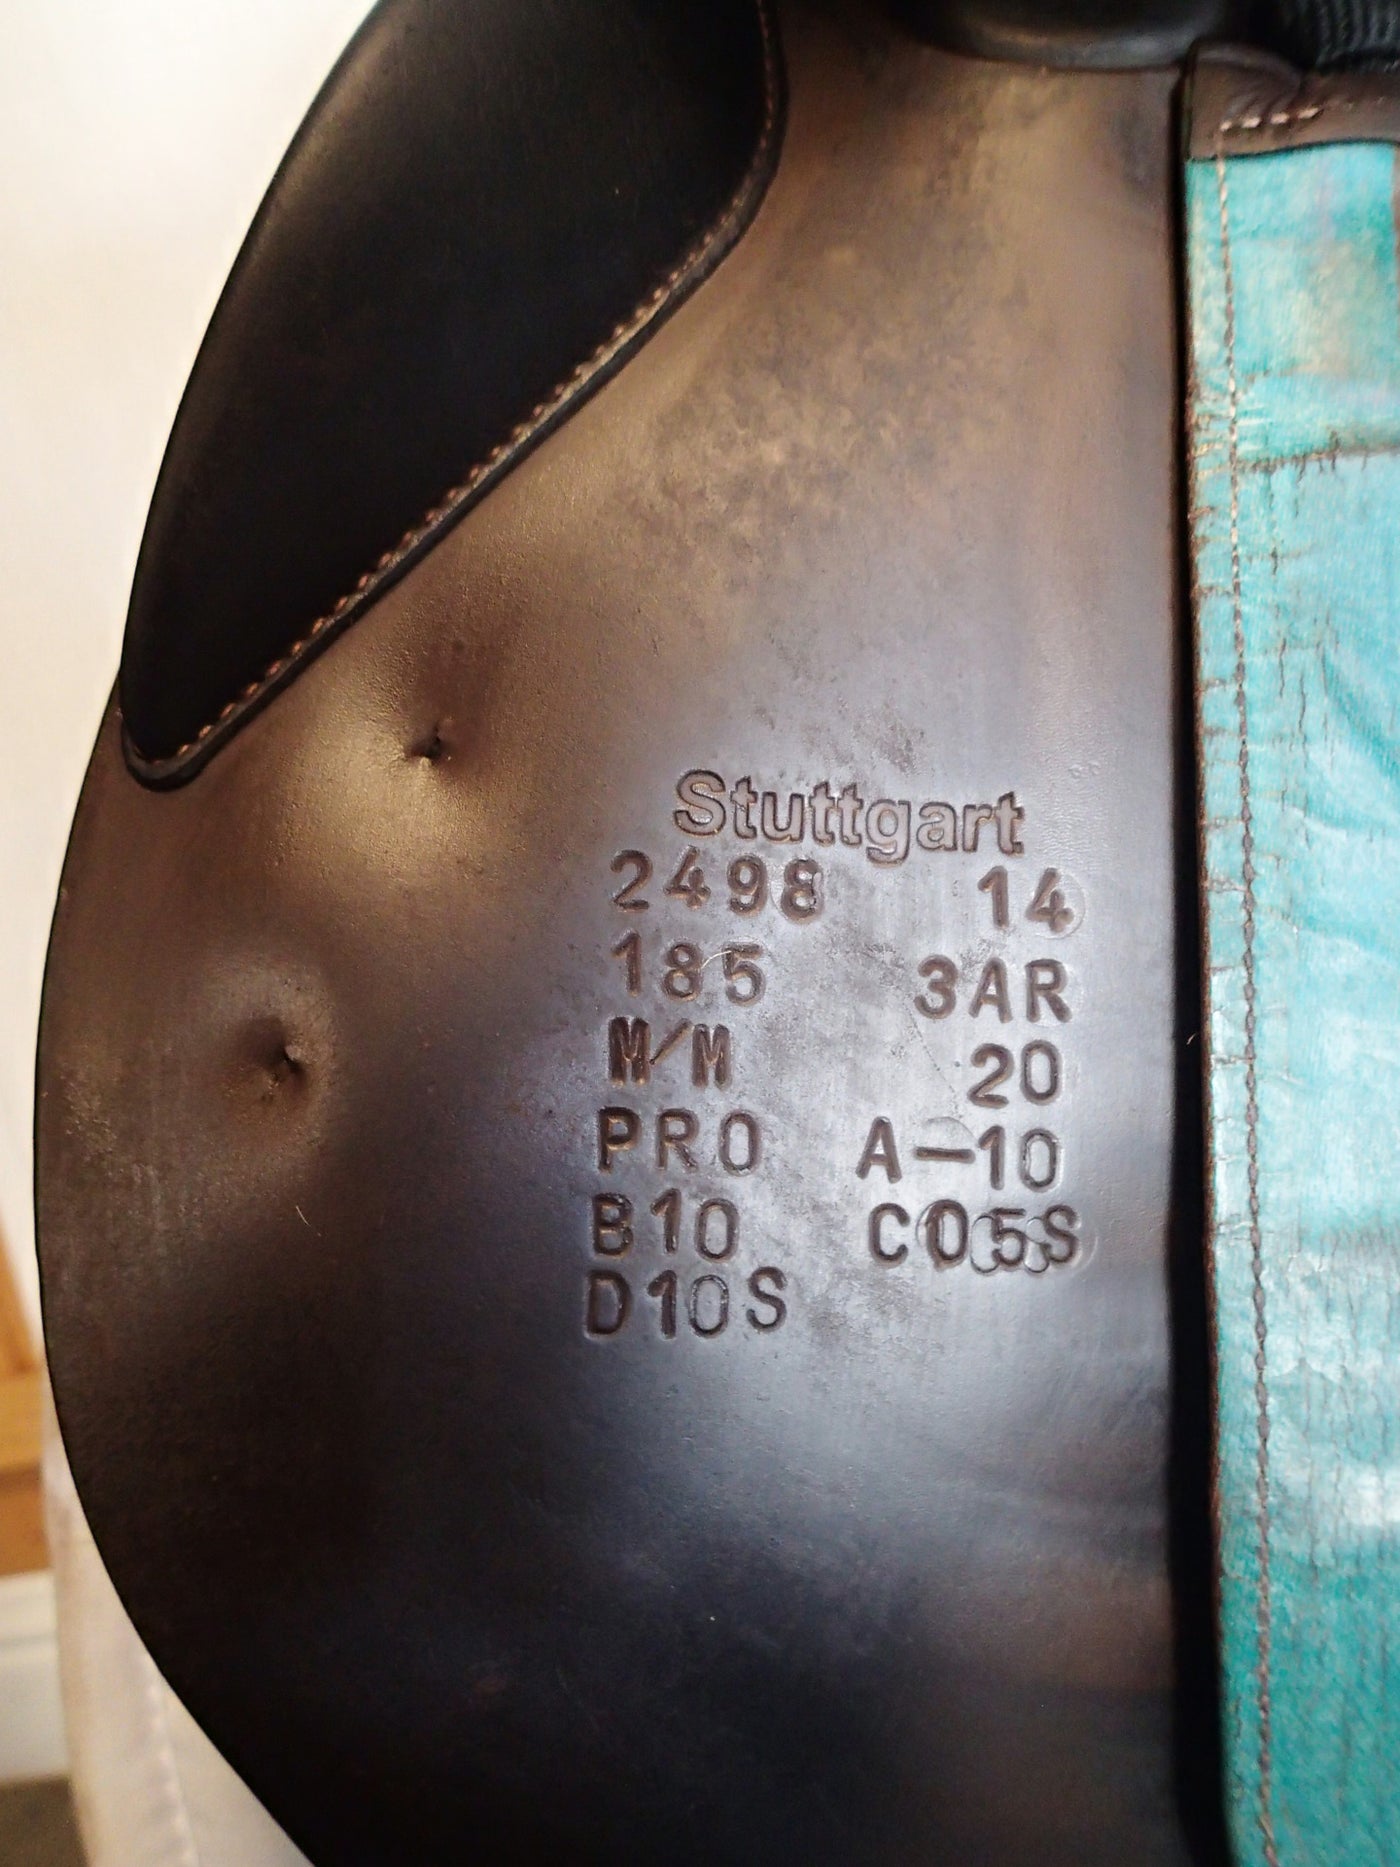 18.5" Voltaire Stuttgart Saddle - Full Buffalo - 2014 - 3AR Flaps - 4.75" dot to dot - Pro Panels